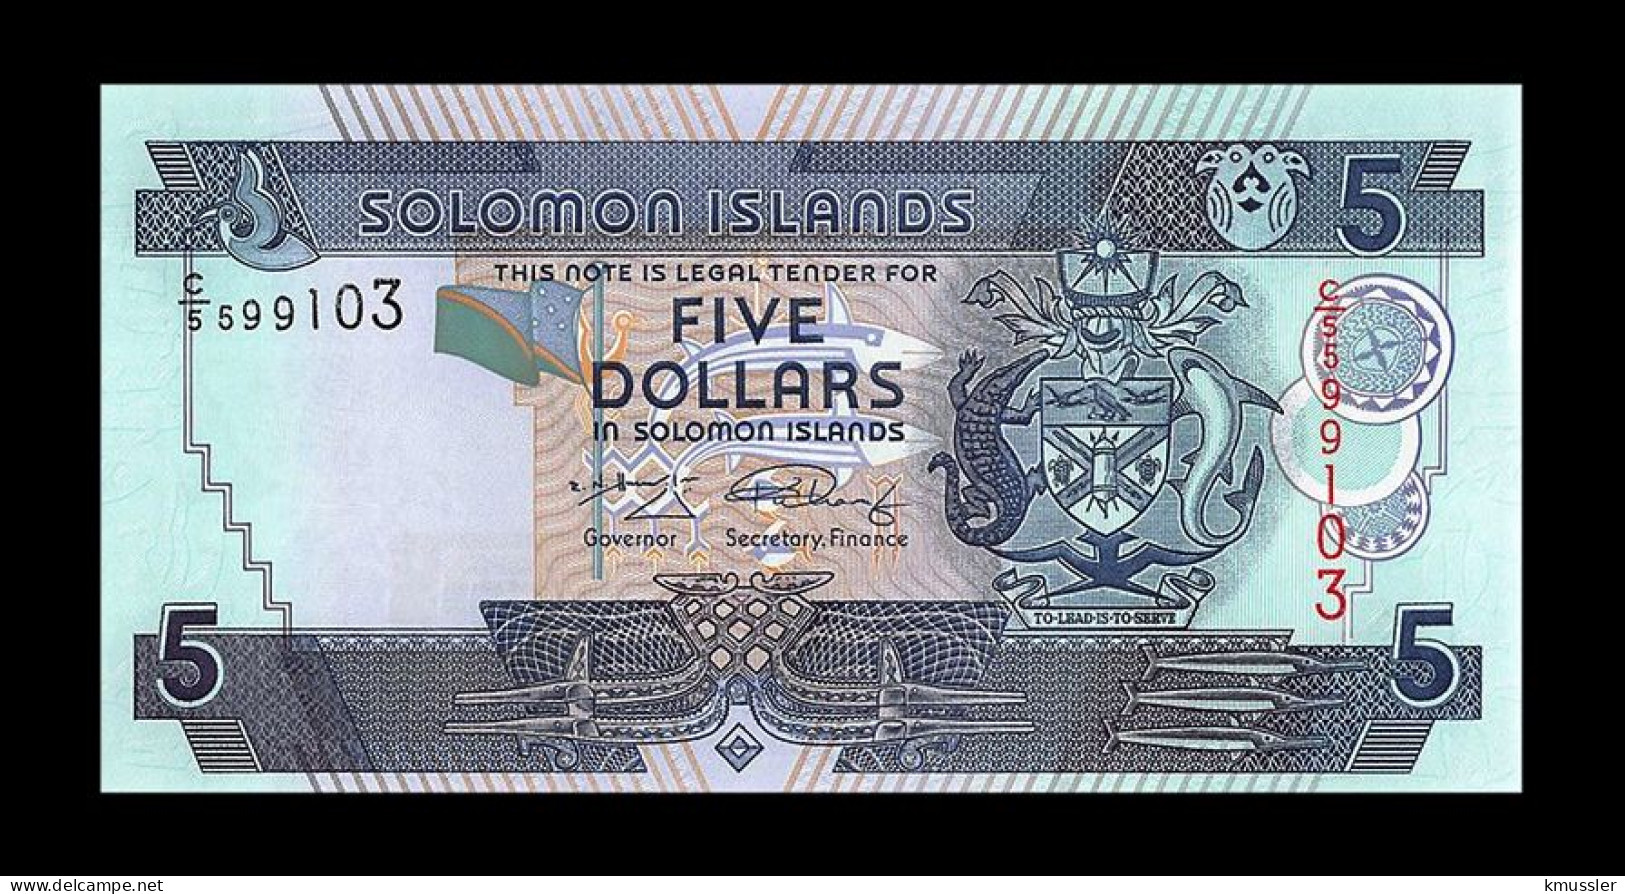 # # # Banknote Von Den Solomon-Inseln 5 Dollars UNC # # # - Solomonen